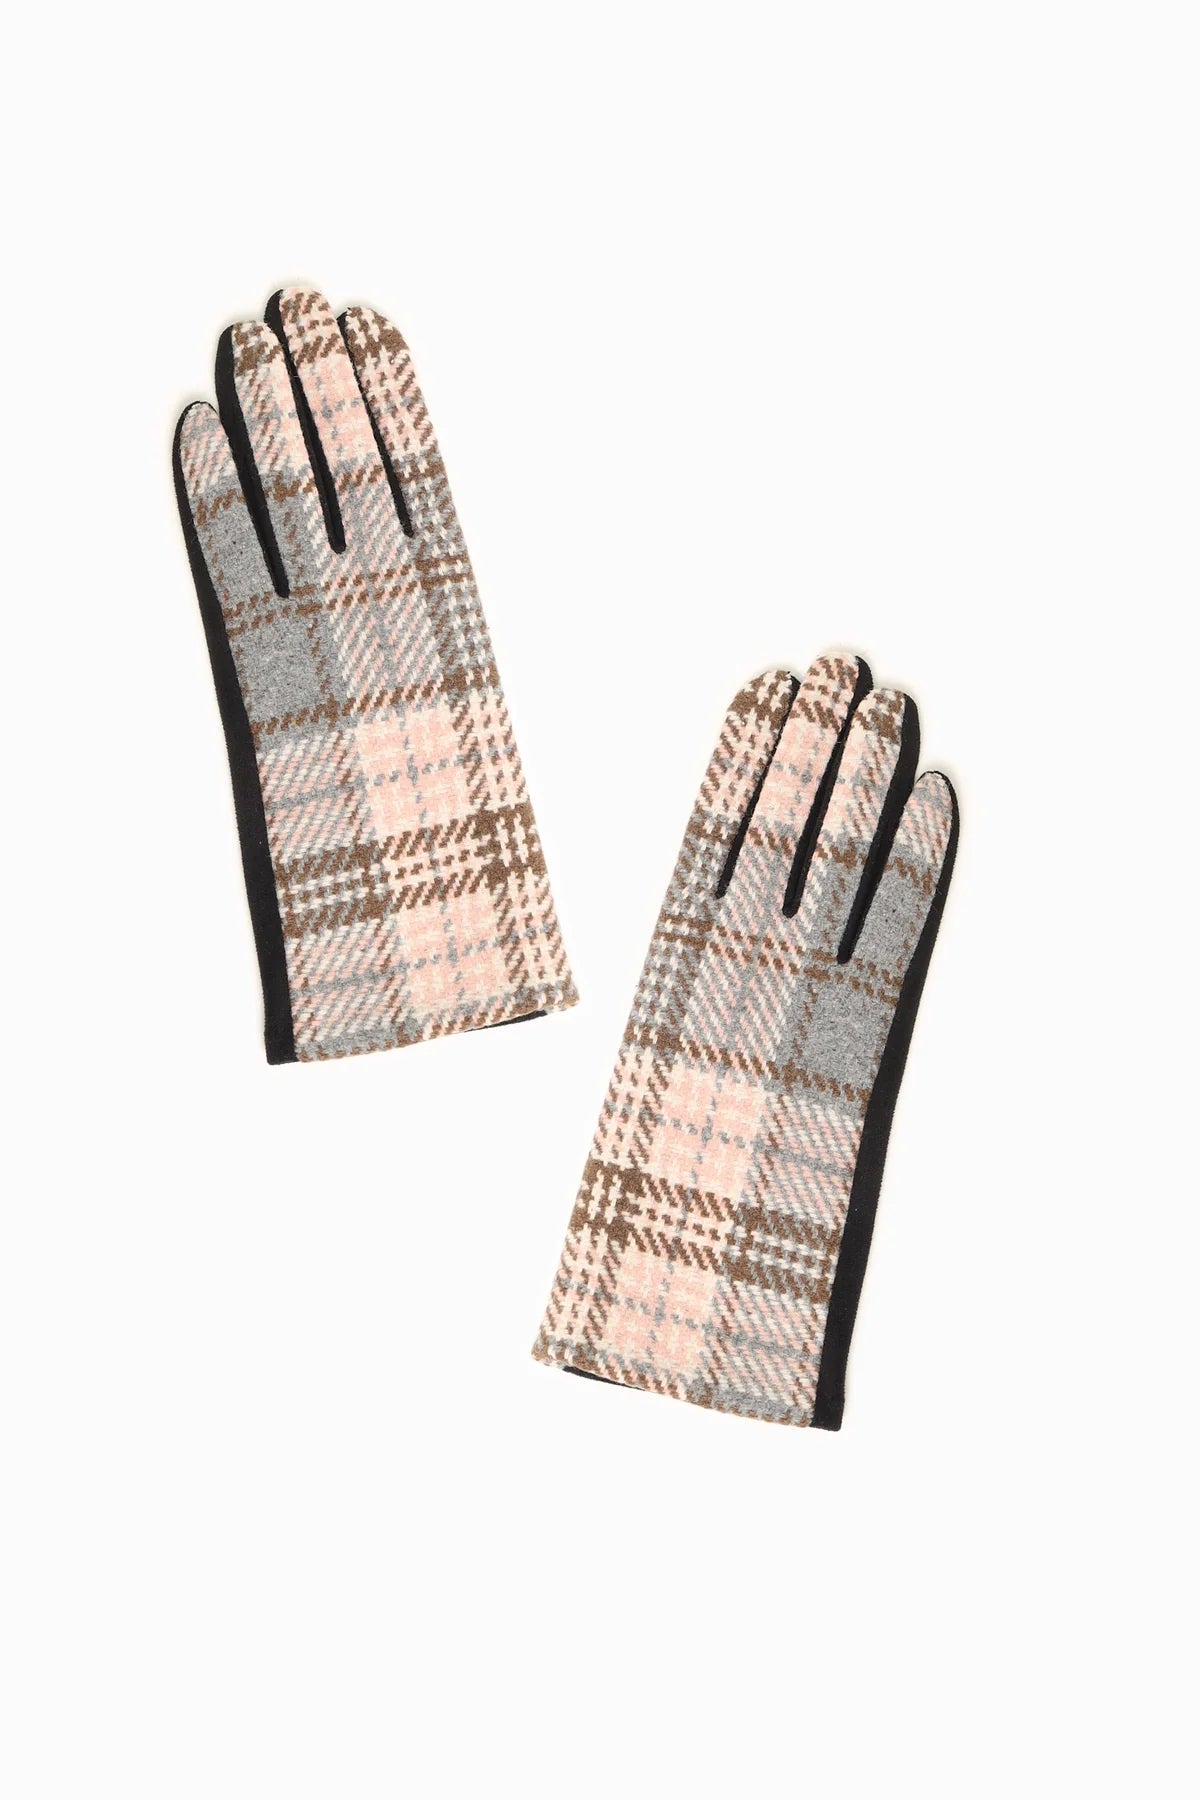 Vivienne Plaid Gloves in Grey - Madison's Niche 